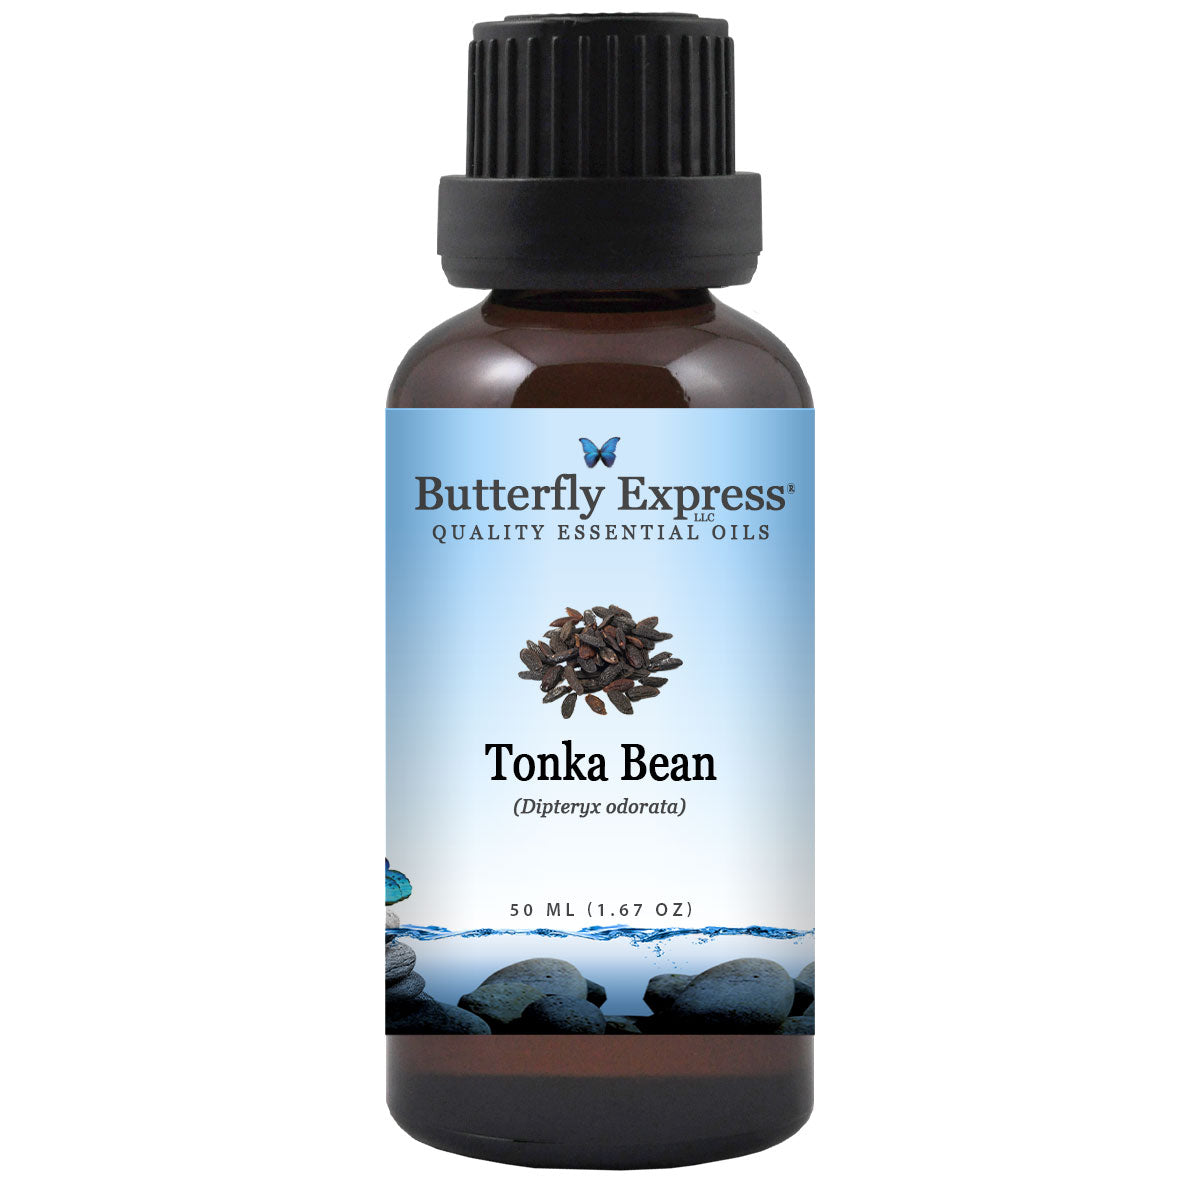 Tonka Bean Essential Oil at Rs 3800/litre, Essential Oils in Kannauj